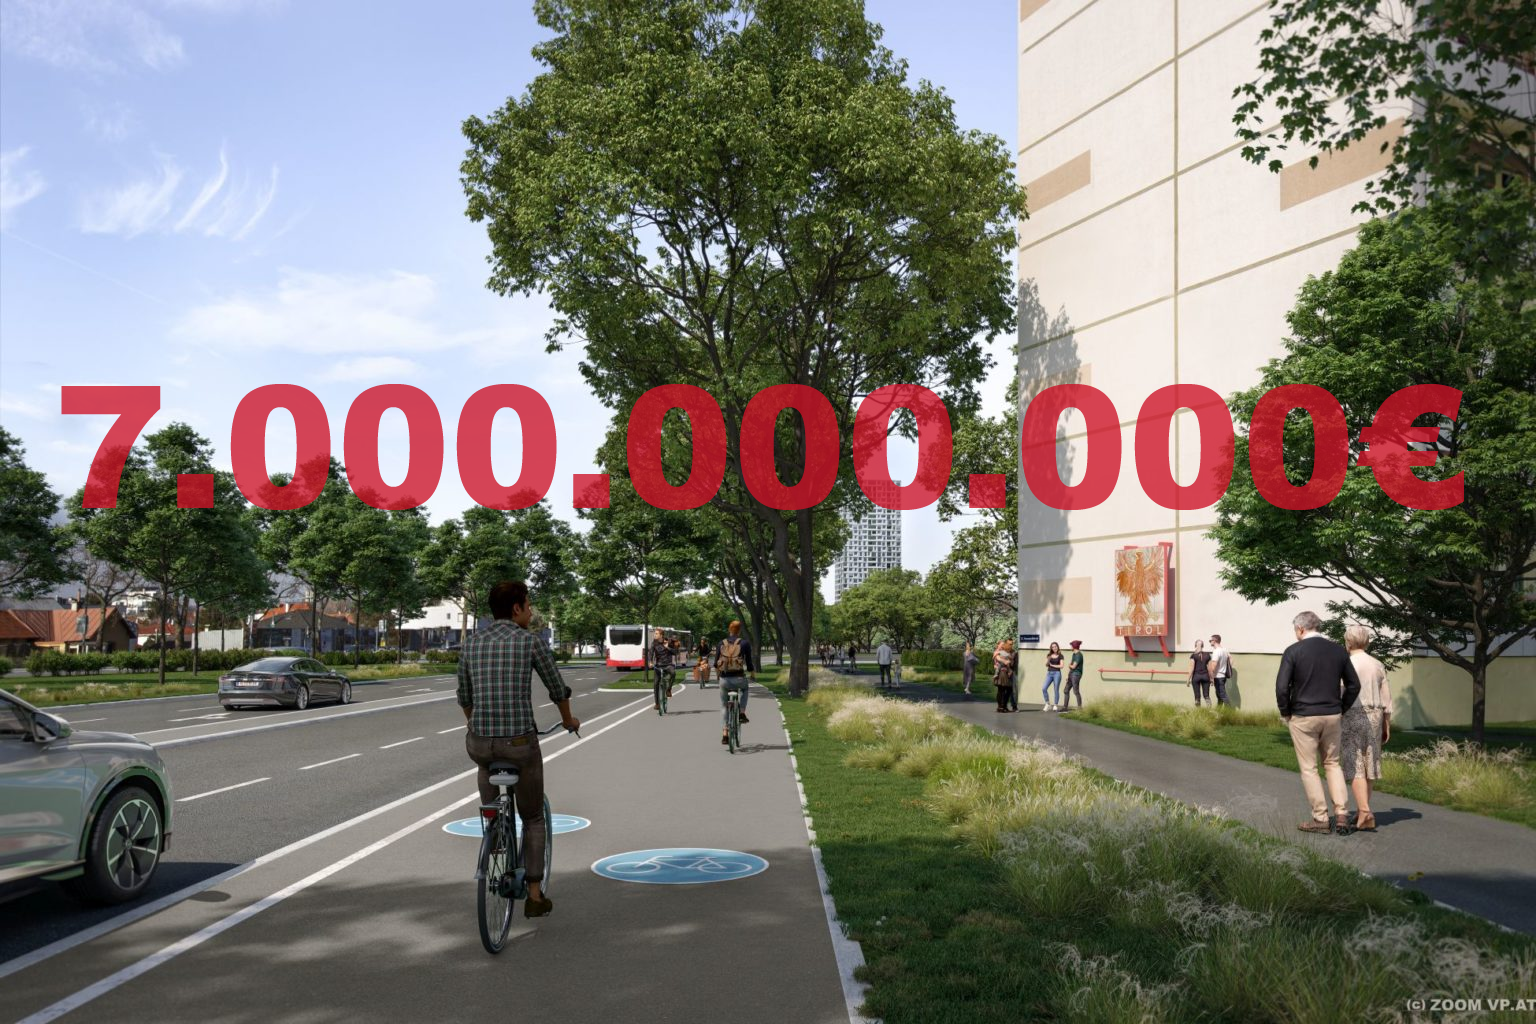 Zukunftsweisende Studie: 7 Milliarden Euro Investitionsbedarf für Radverkehr